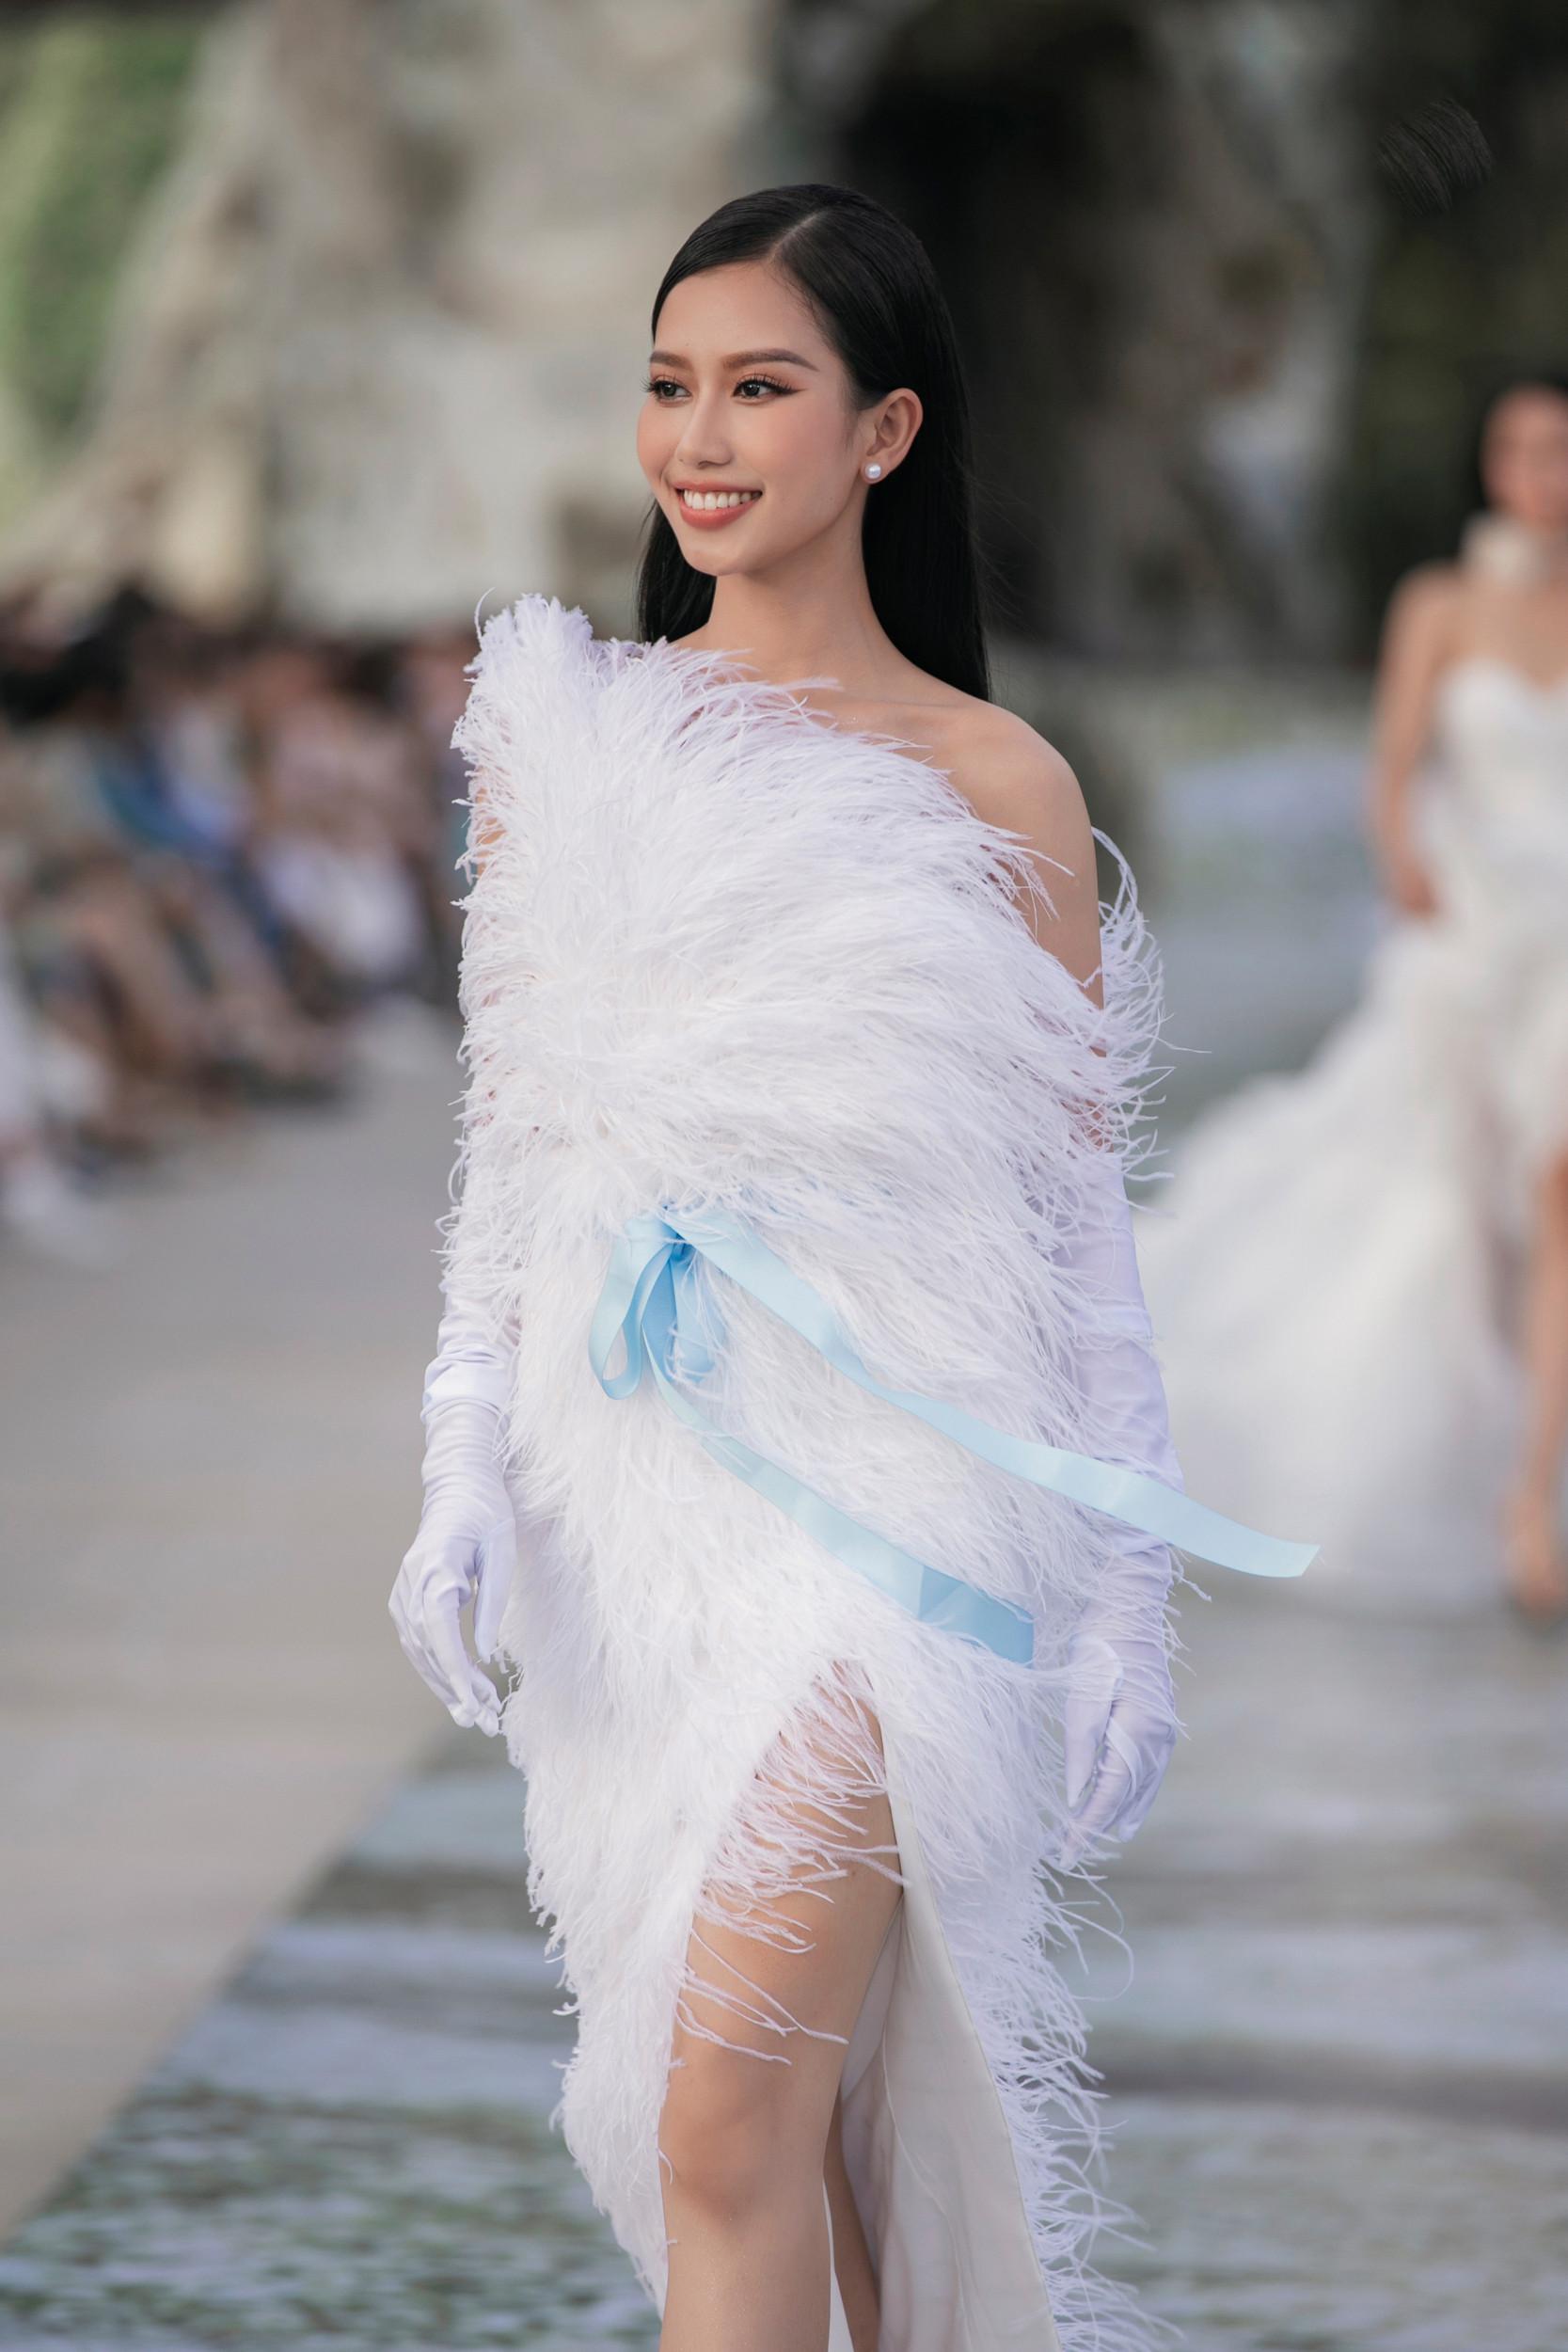 Vẻ đẹp ngọt ngào của hoa hậu Tiểu Vy trong thiết kế của Hà Thanh Việt